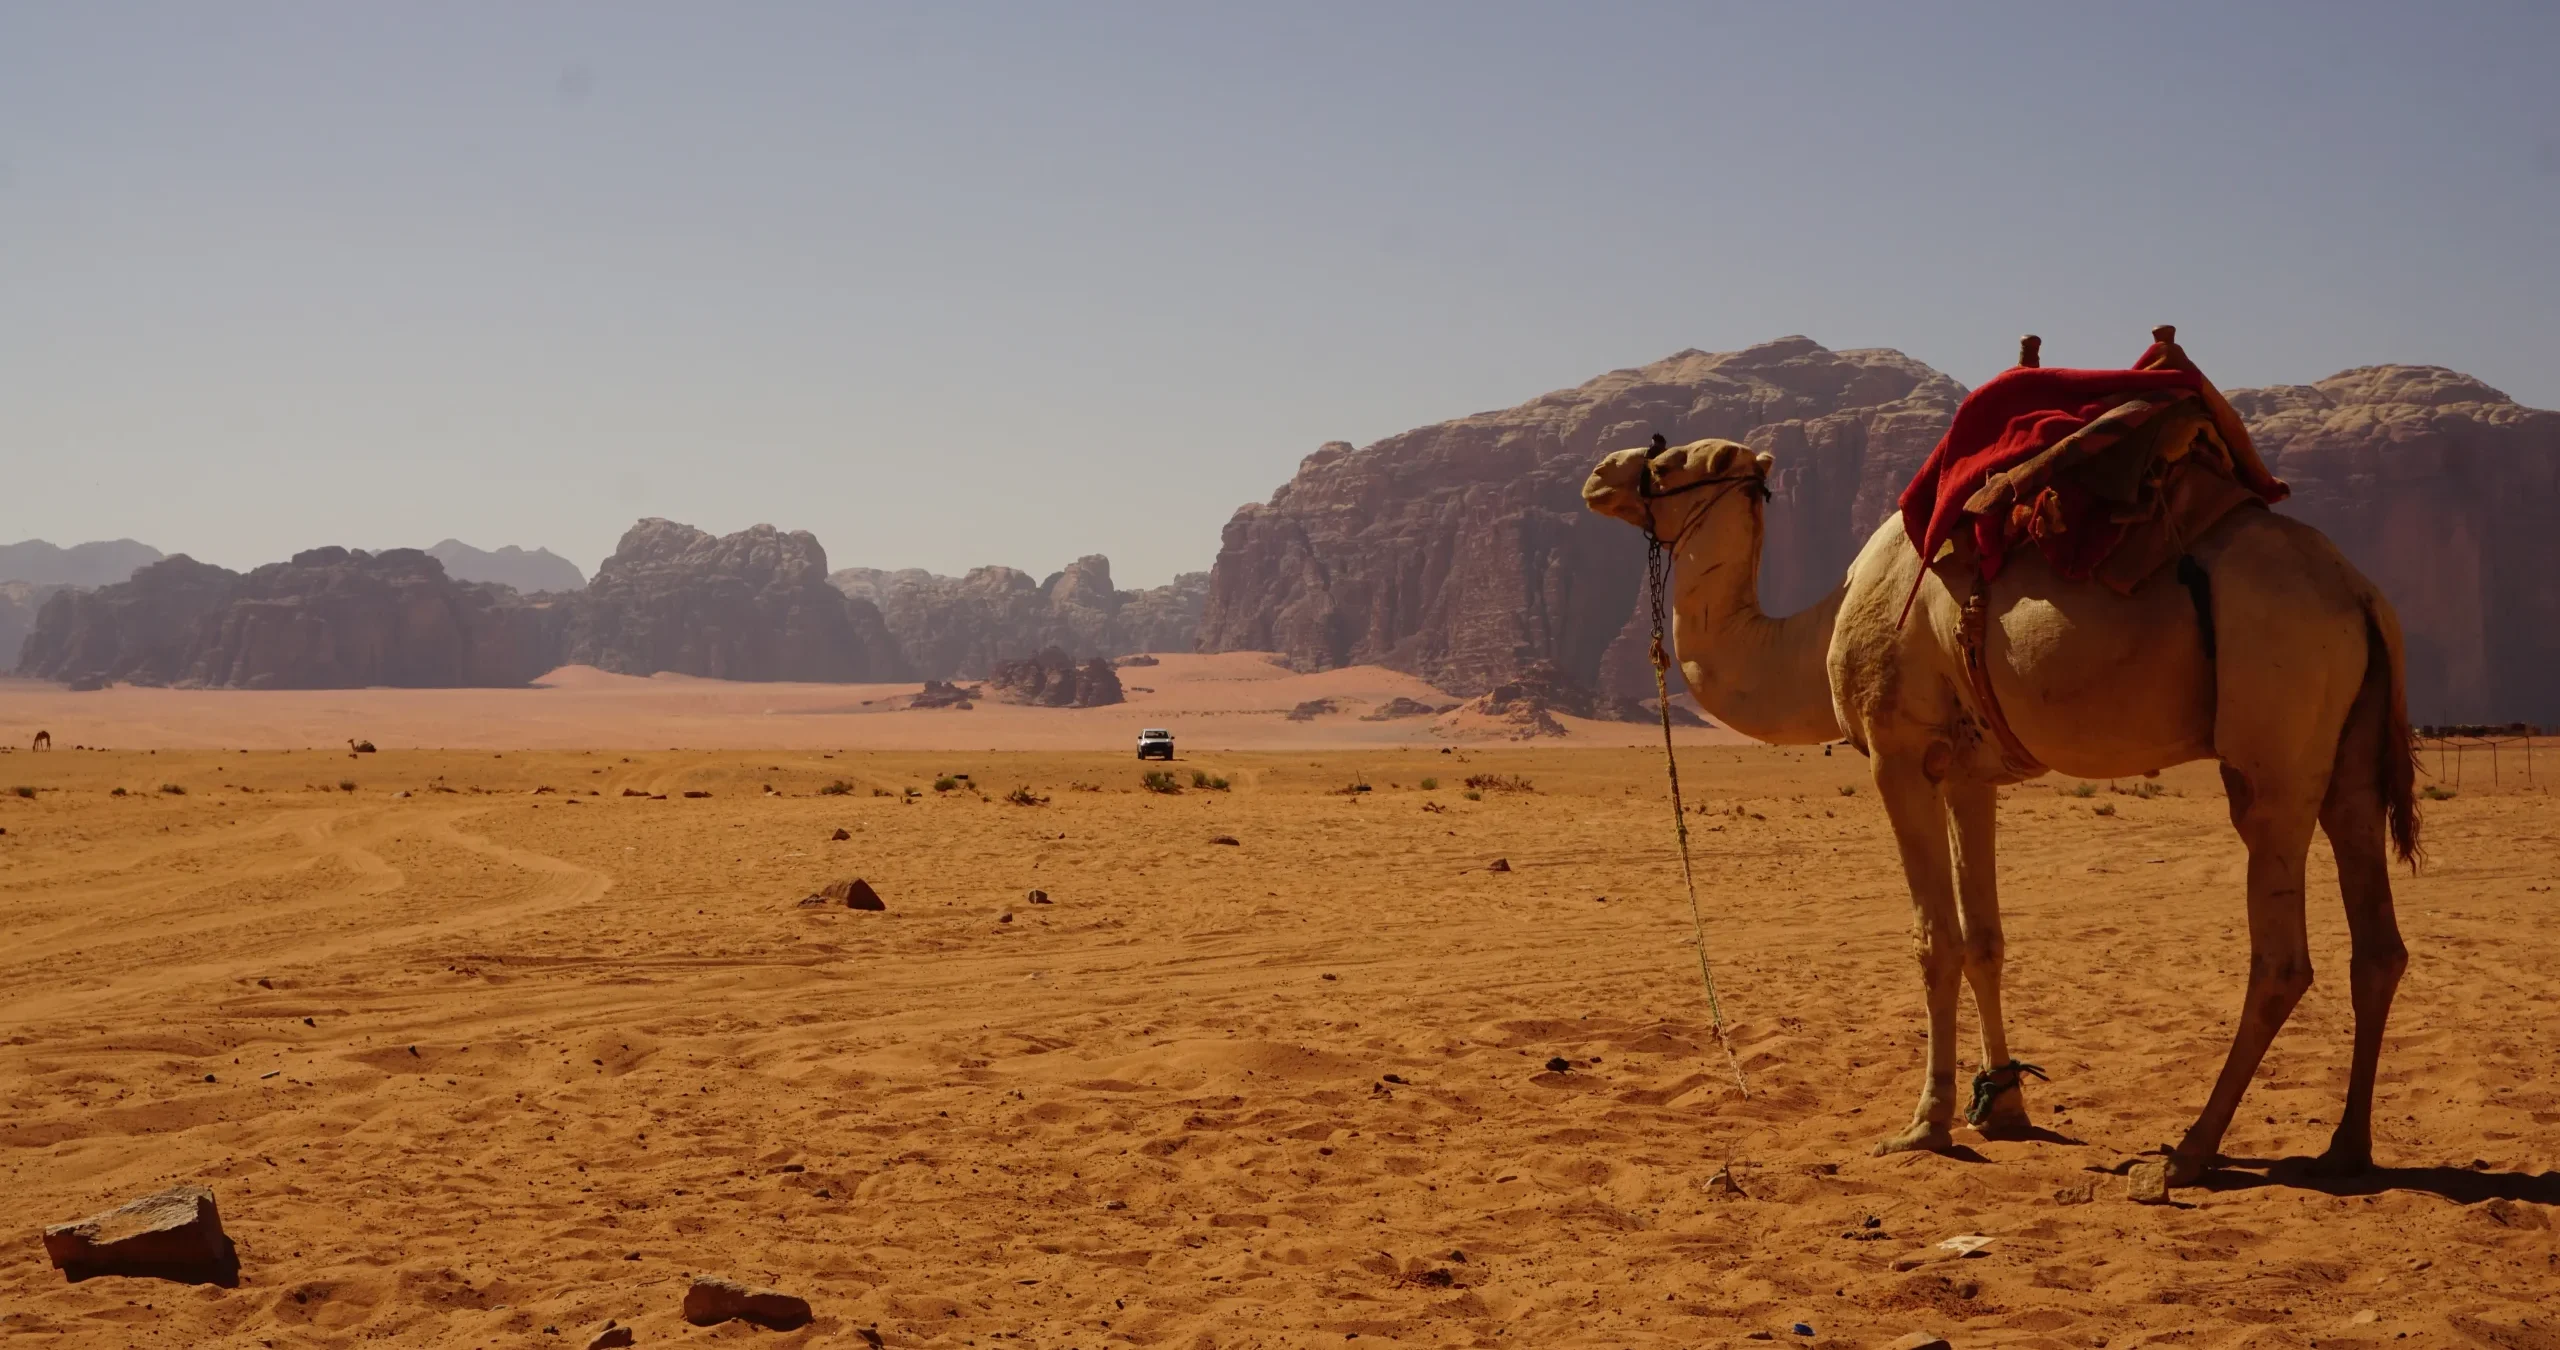 A camel in the desert of Wadi Rum, Jordan